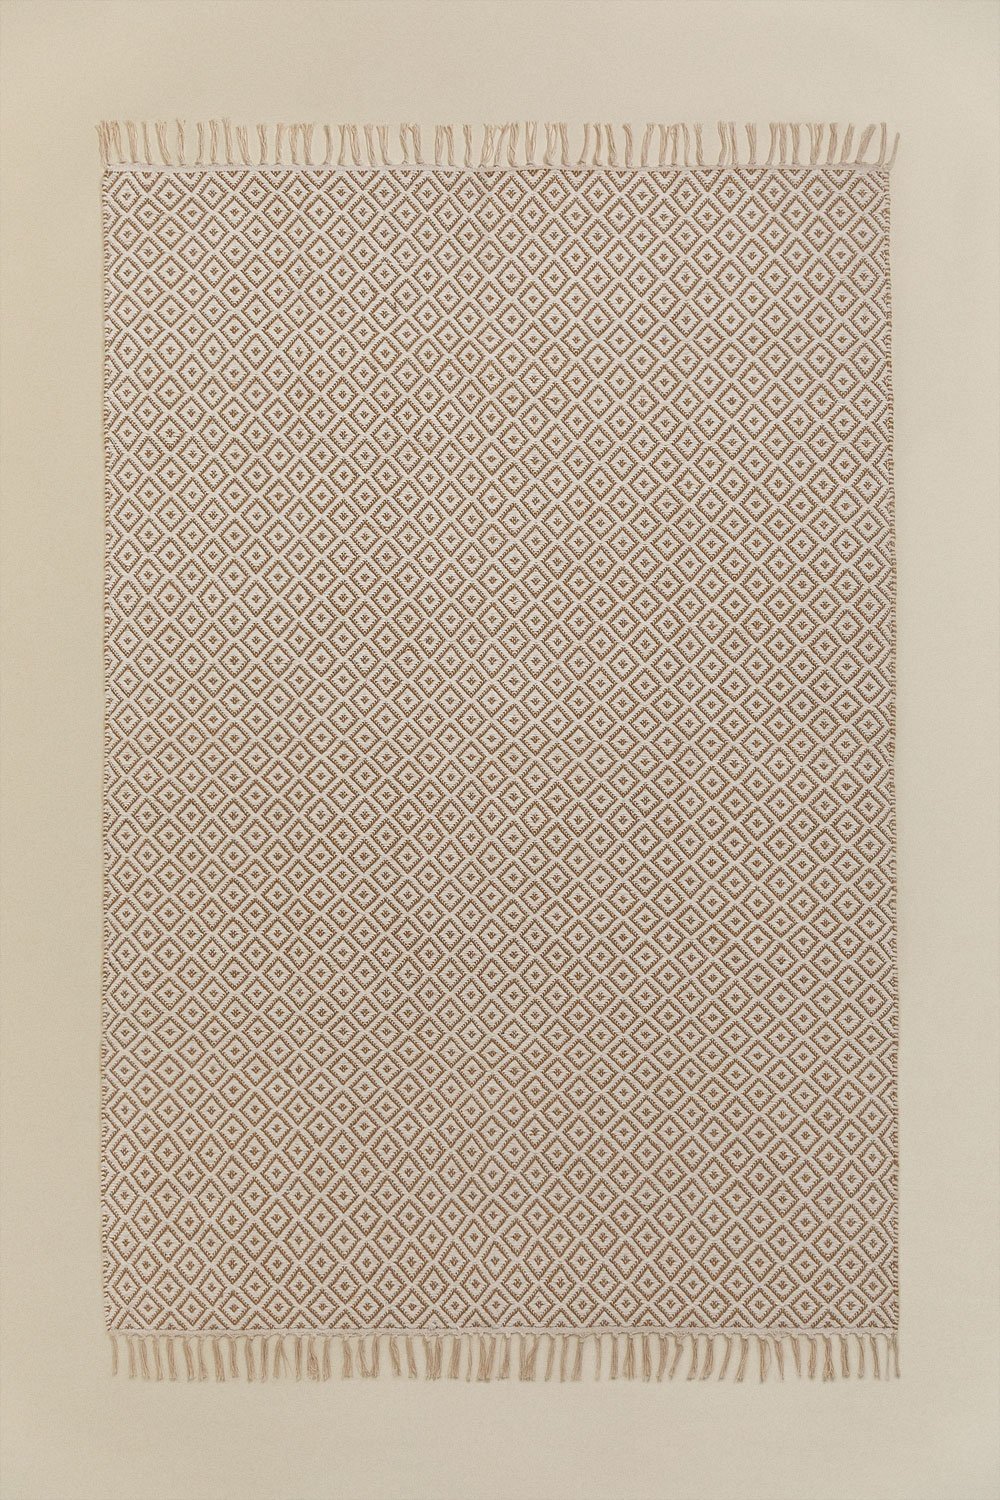 Tapete em Algodão e Juta (175x122 cm) Durat, imagem de galeria 1